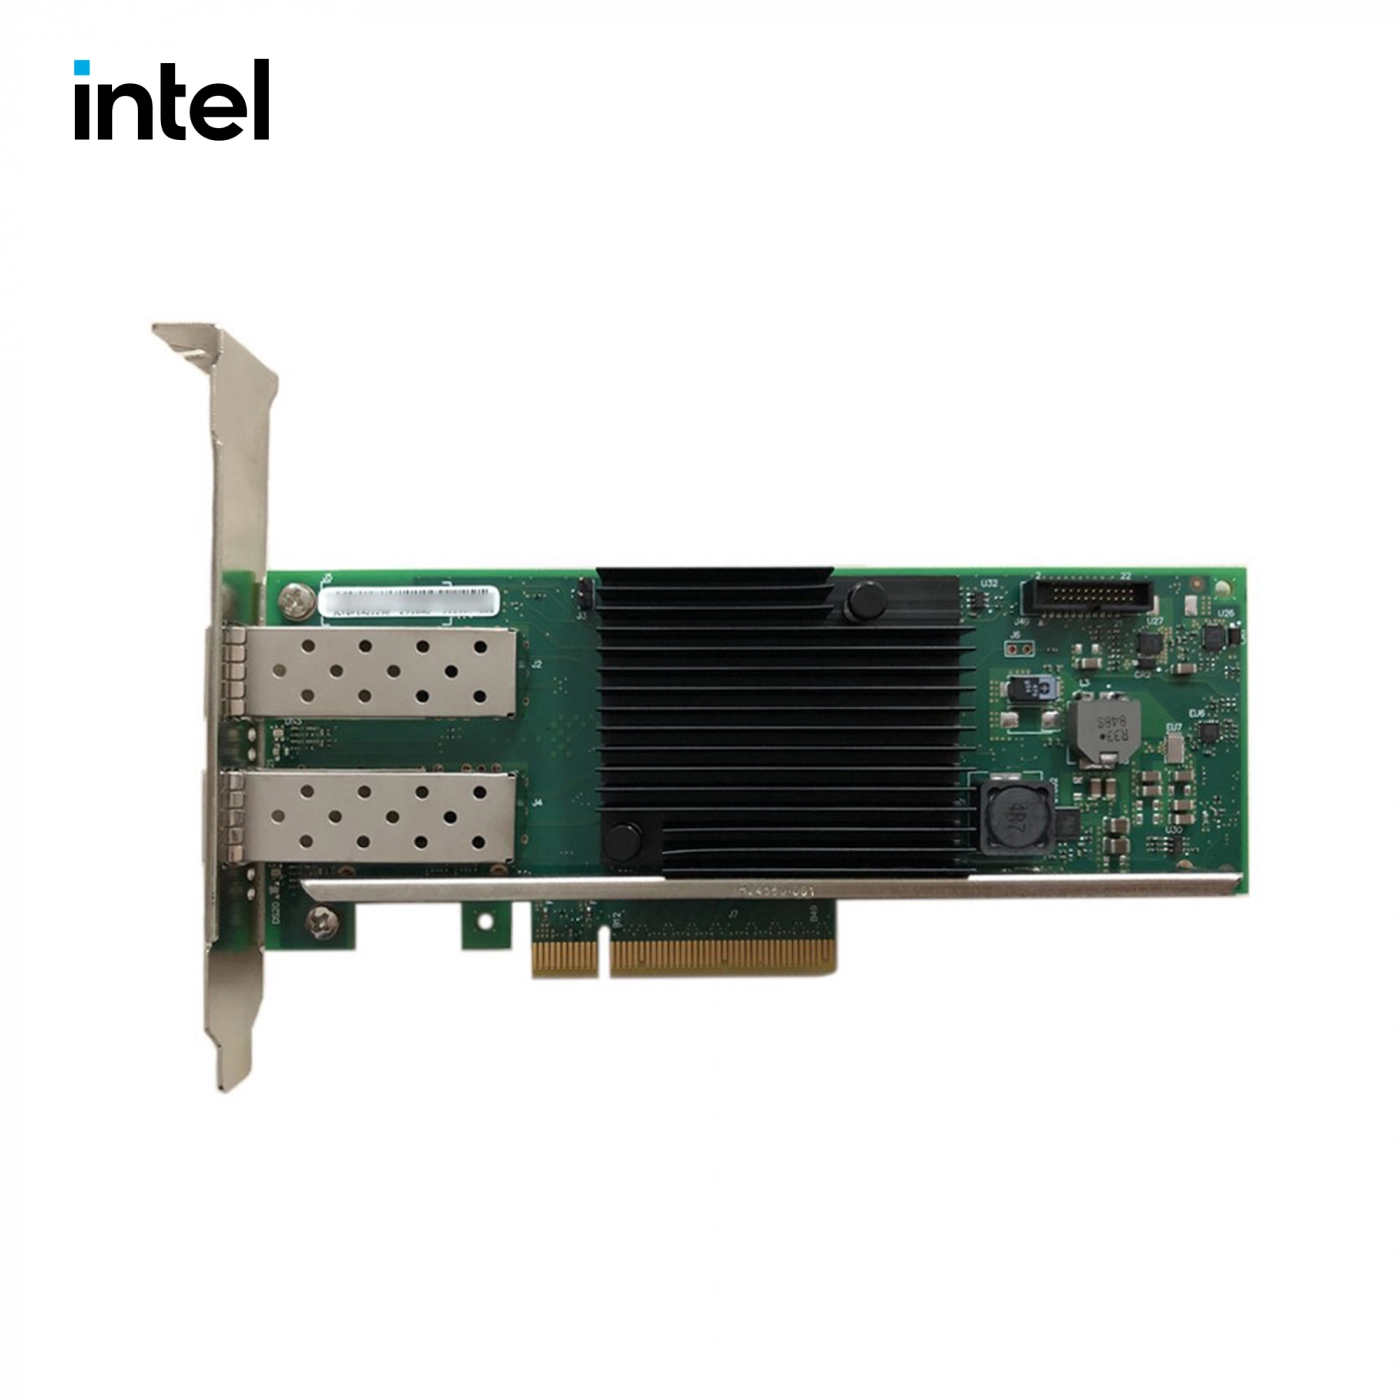 Купить Сетевая карта Intel X710-DA2 retail bulk - фото 2